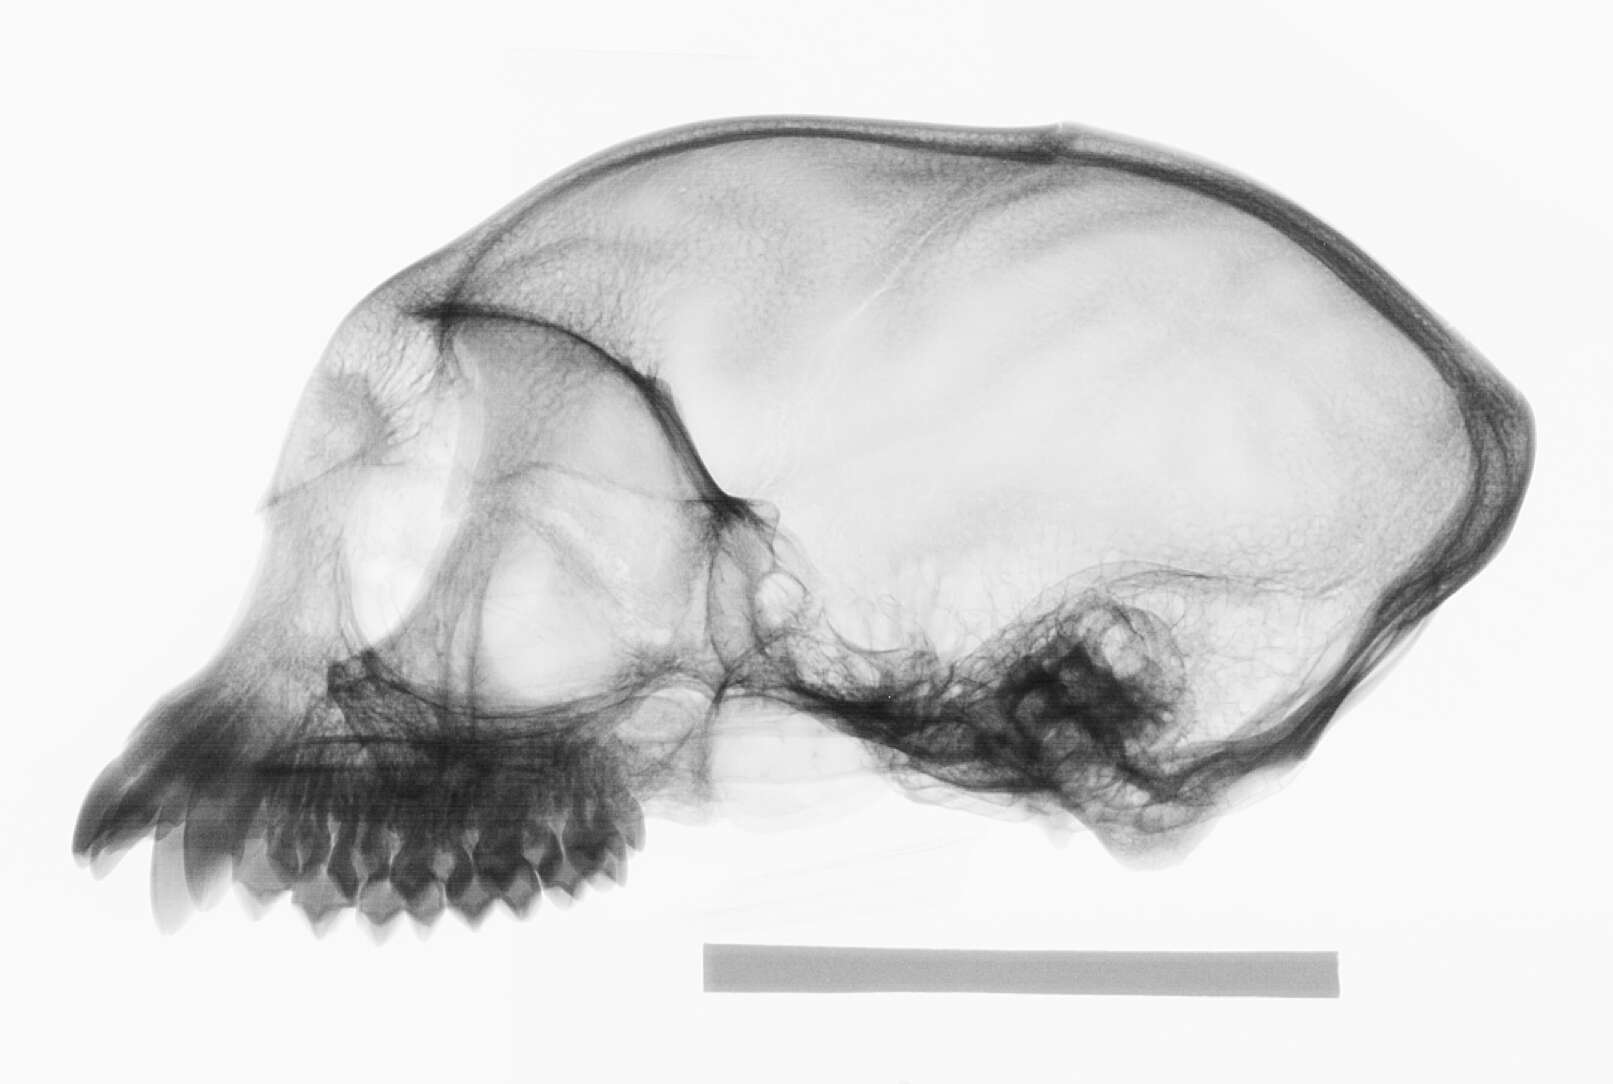 Image of Presbytis sumatrana (Müller & Schlegel 1841)